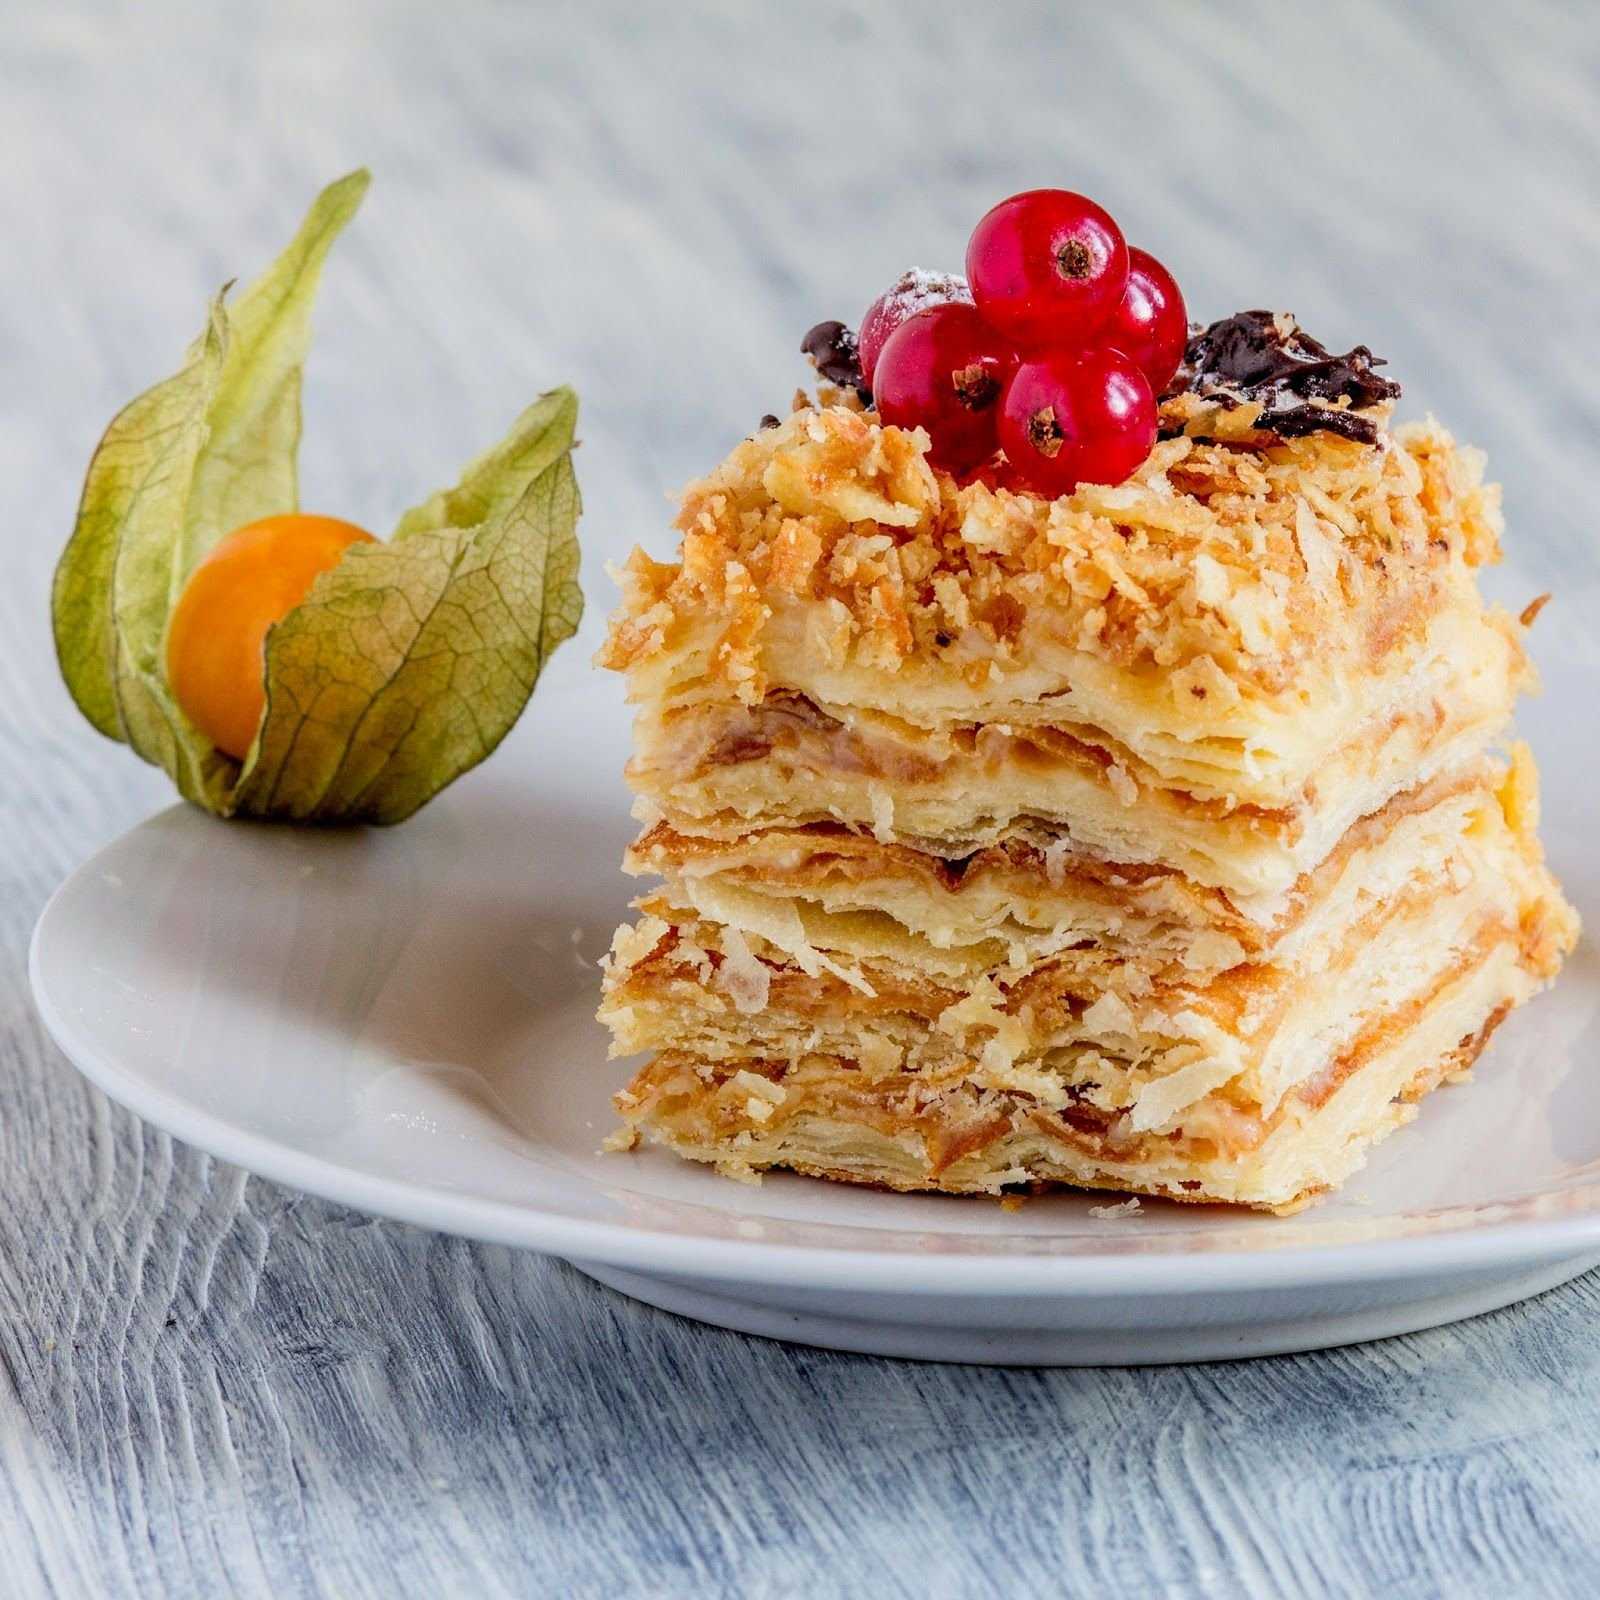 Как приготовить вкусный и полезный Наполеон в домашних условиях Лучшие рецепты веганского десерта Какие ингредиенты потребуются для готовки вкусного торта